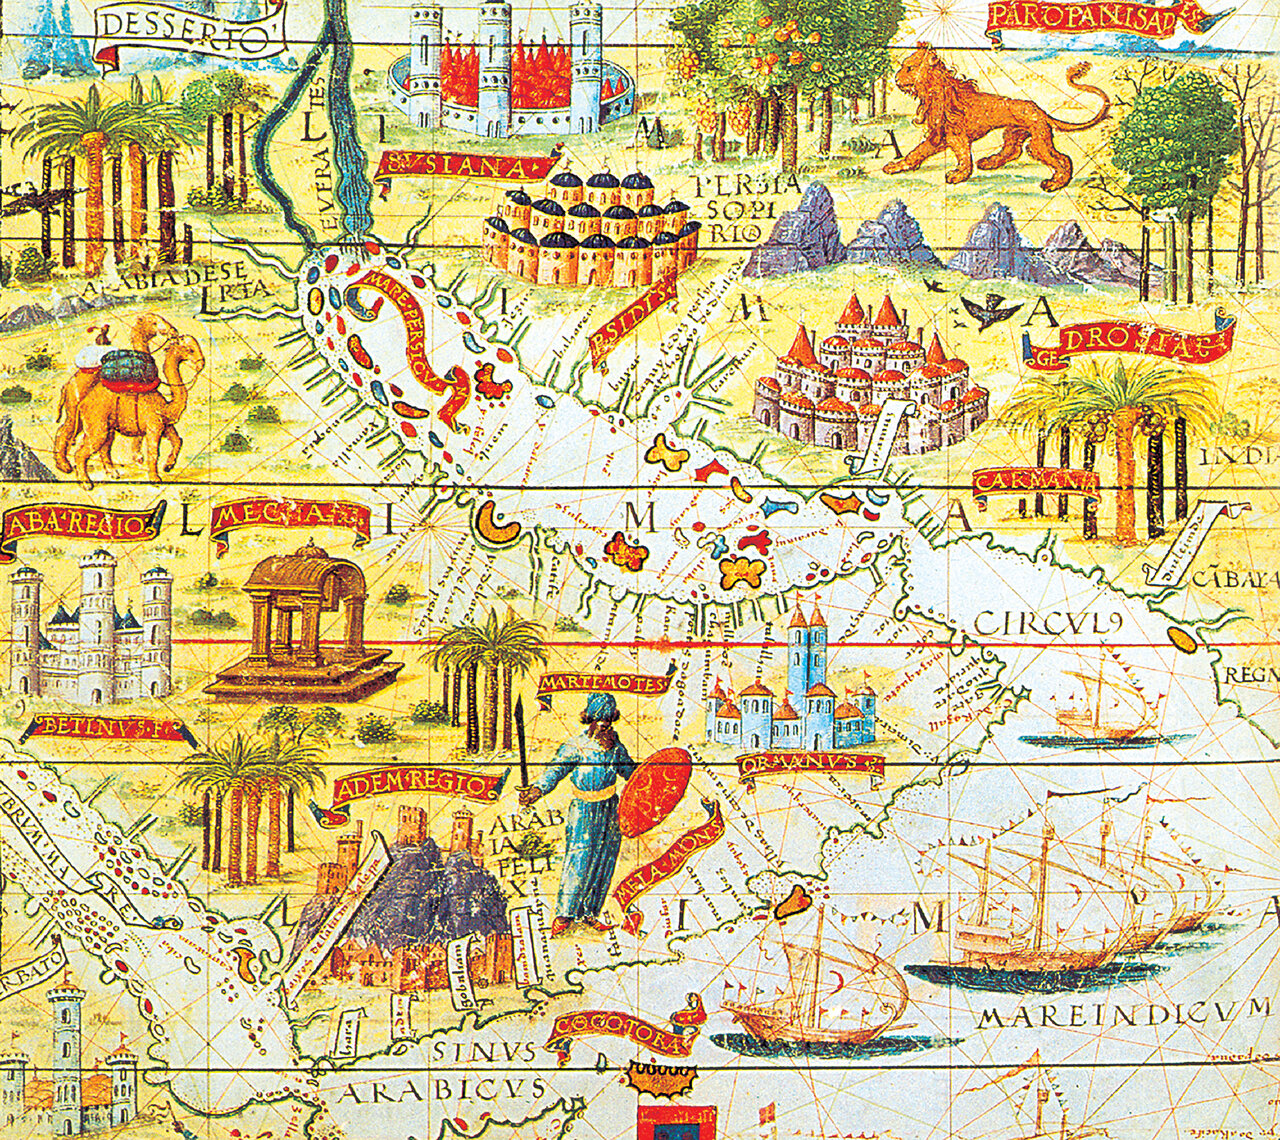 اين تصوير، نقشه عربستان، هندوستان و خليج‌فارس است. نقشه‌اي كه توسط نقشه‌نگار «لوپو هومن» (هومم) (1572–1497ميلادي) تهيه شده و در سال 1519 ميلادي در اطلس ميلر منتشر شده. خليج‌فارس به نام«Mare Persicus» در اين نقشه كاملا مشخص است.